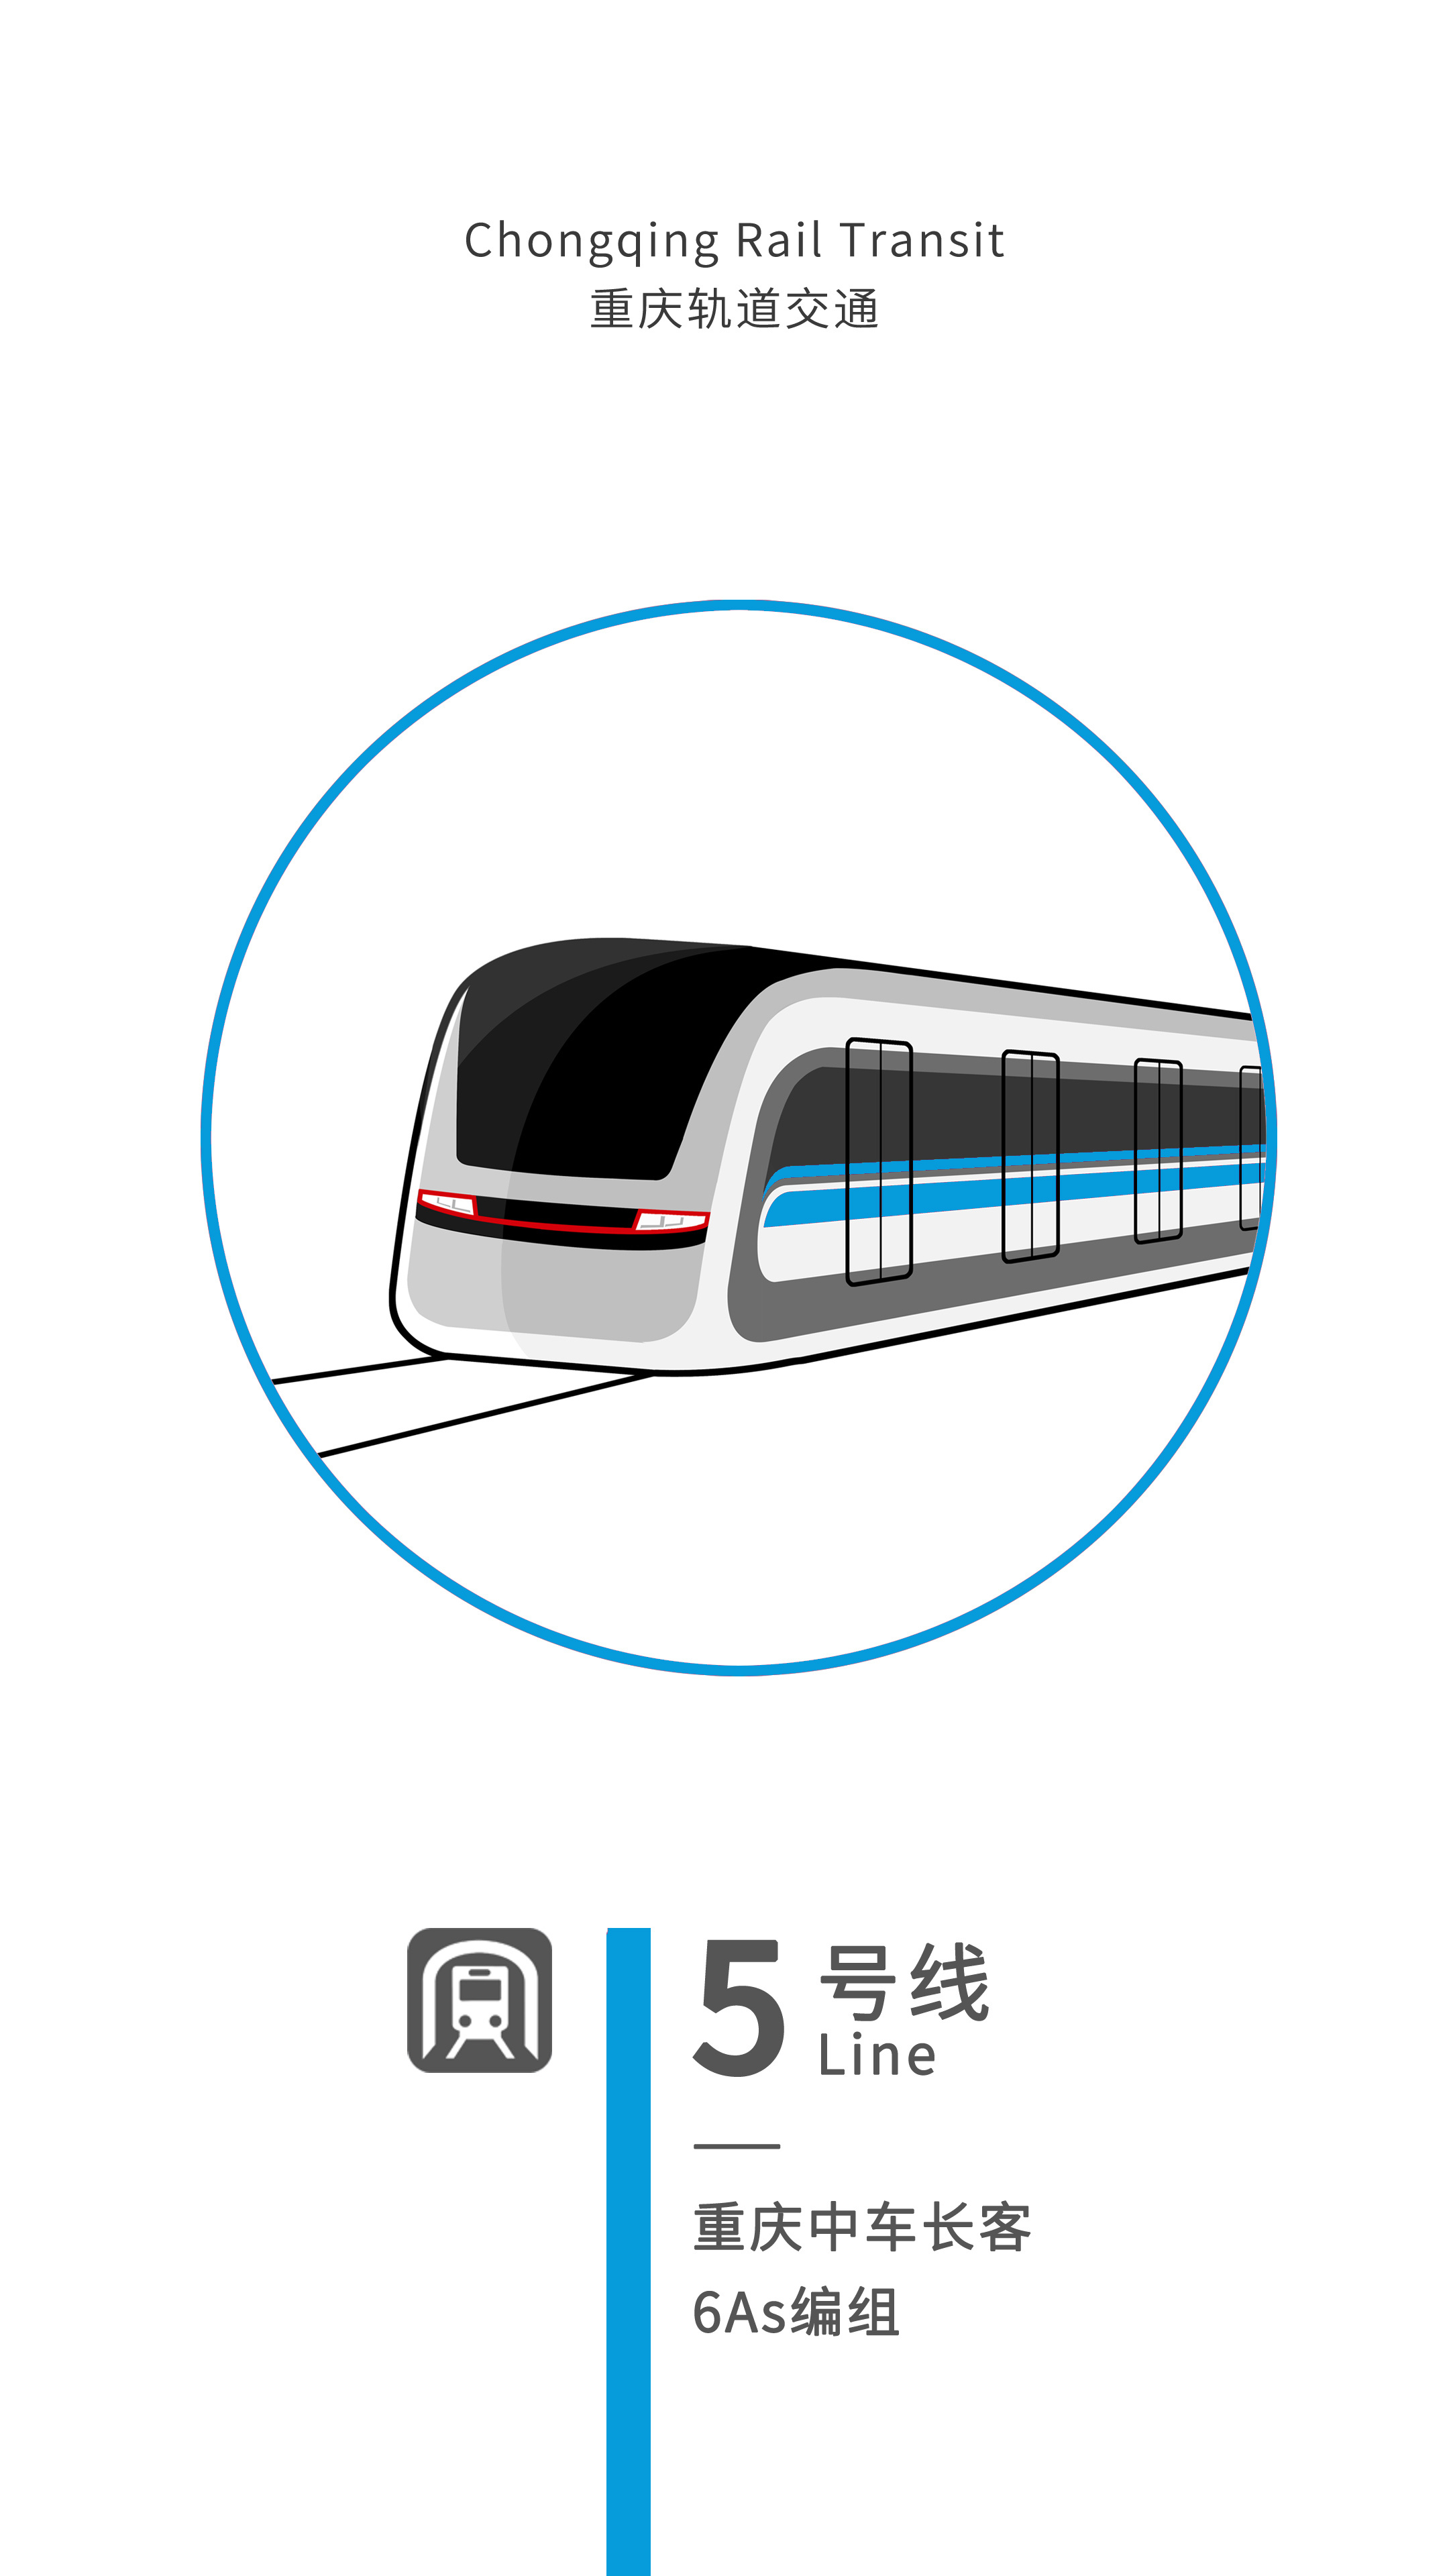 重庆地铁logo含义图片